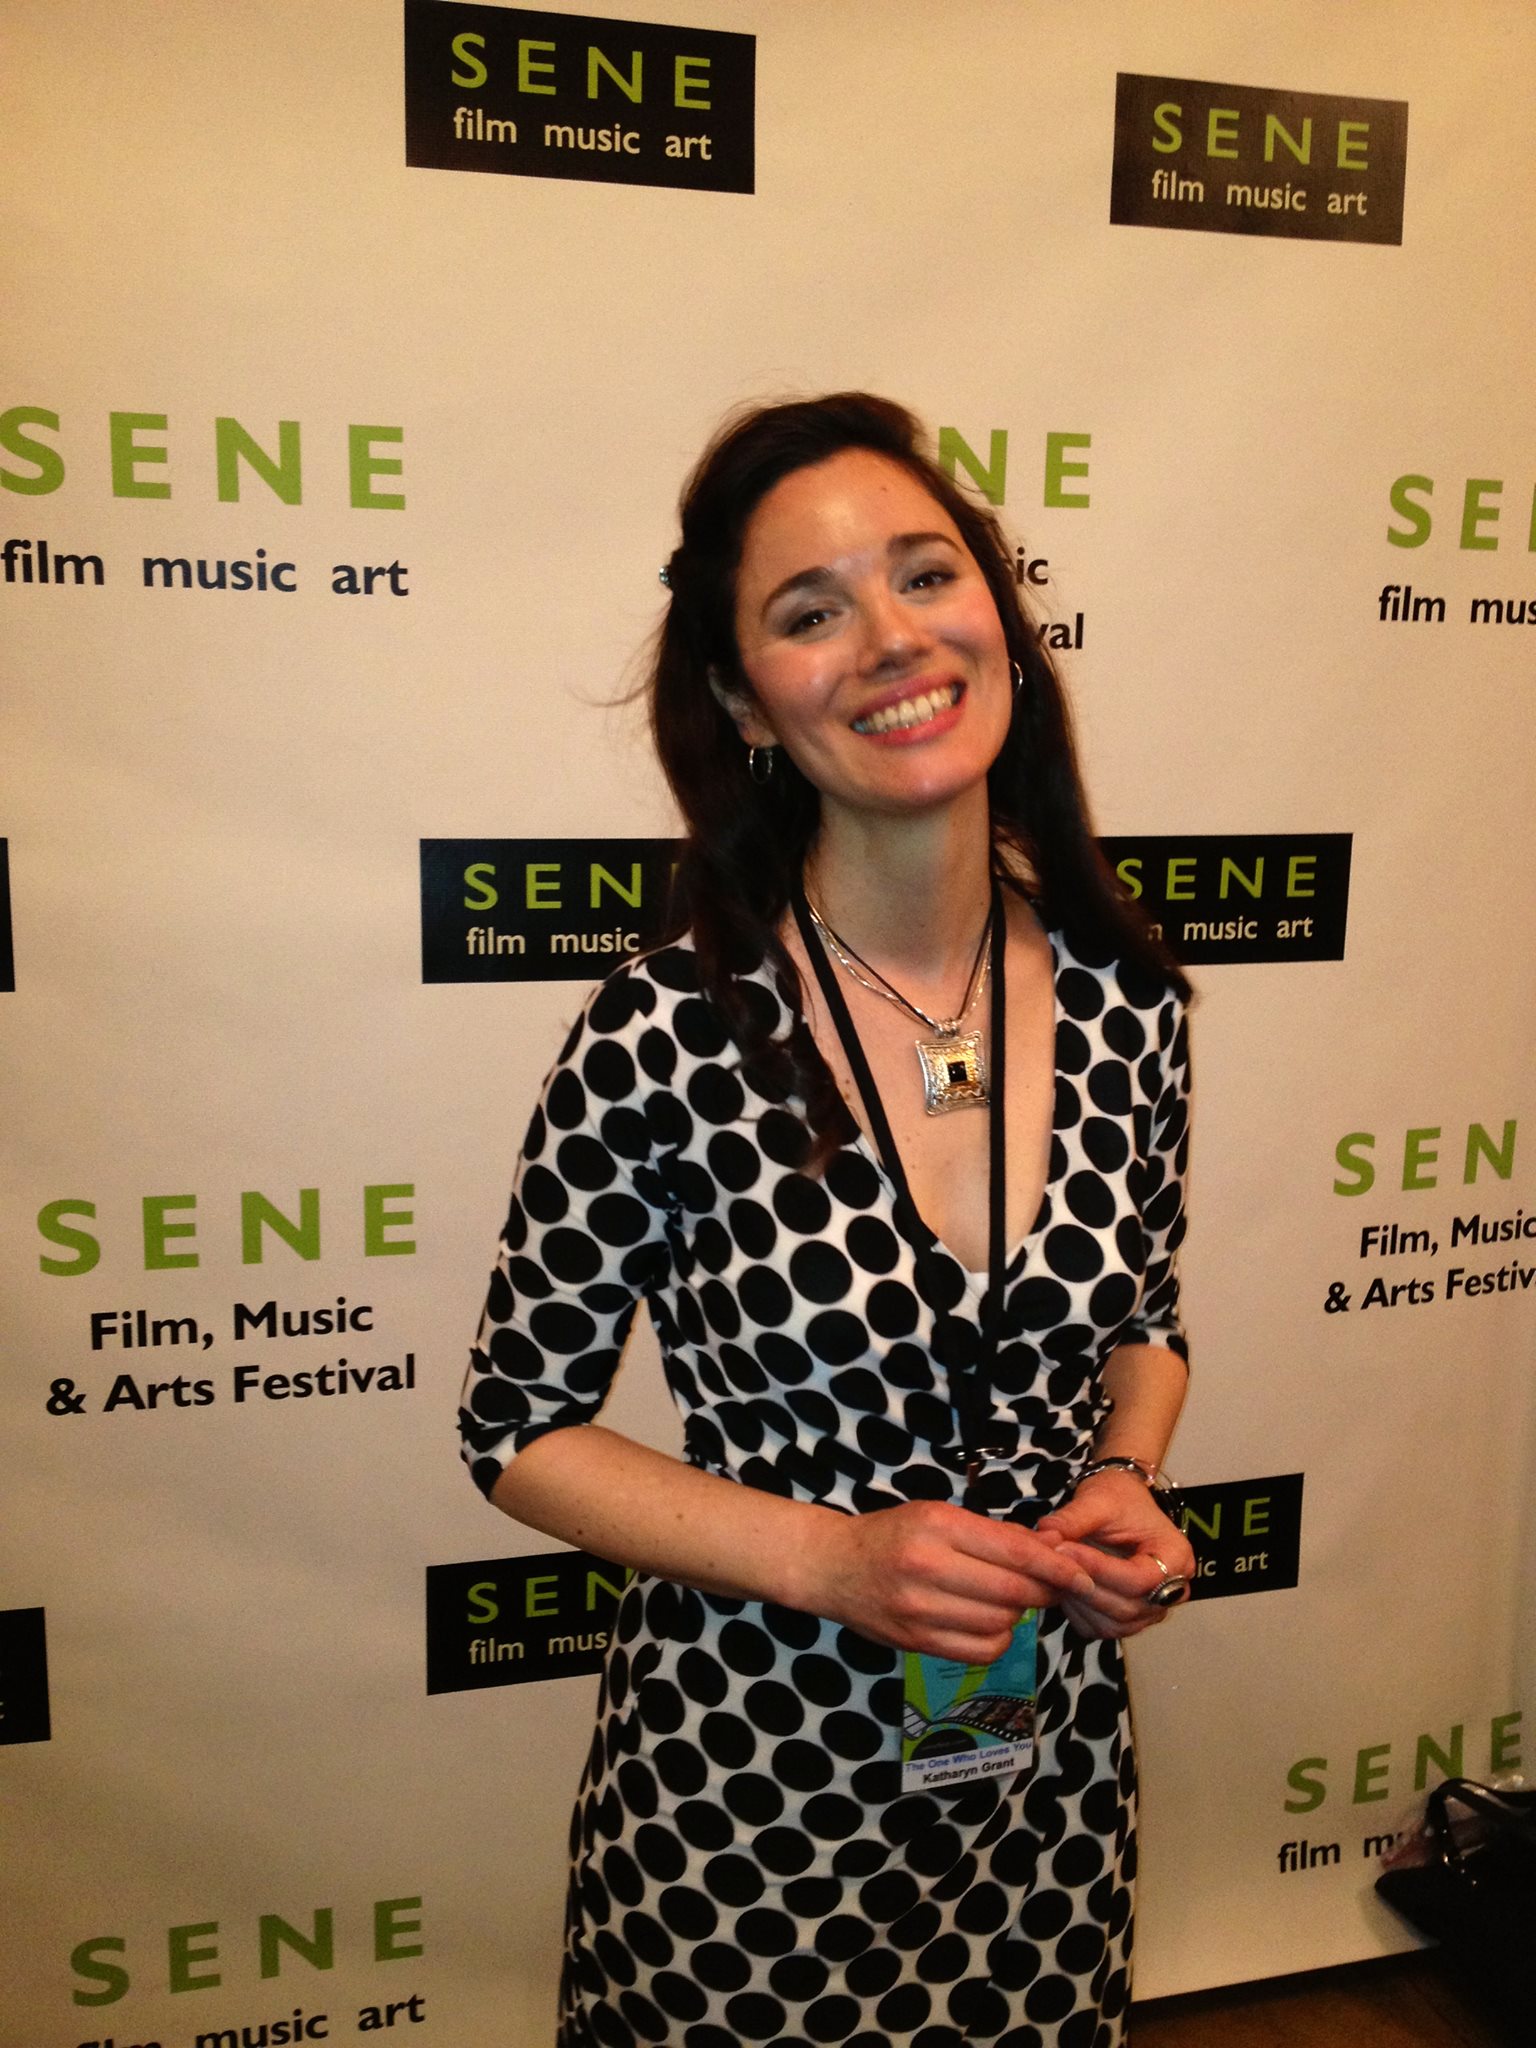 SENE film festival in Providence, RI